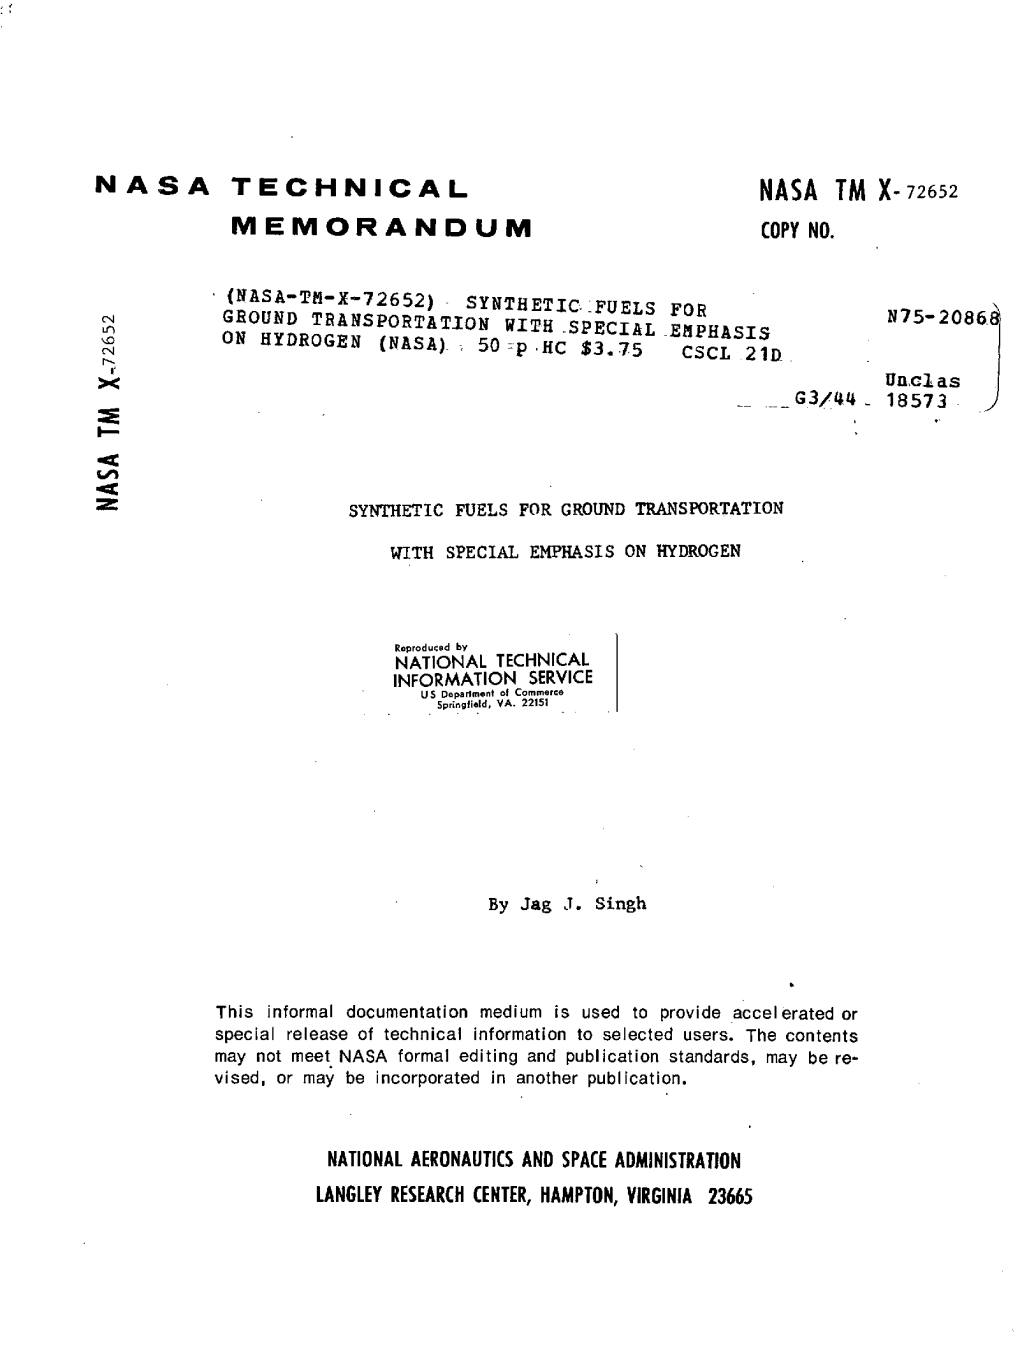 Nasa Tm X- 72652 Memorandum Copy No